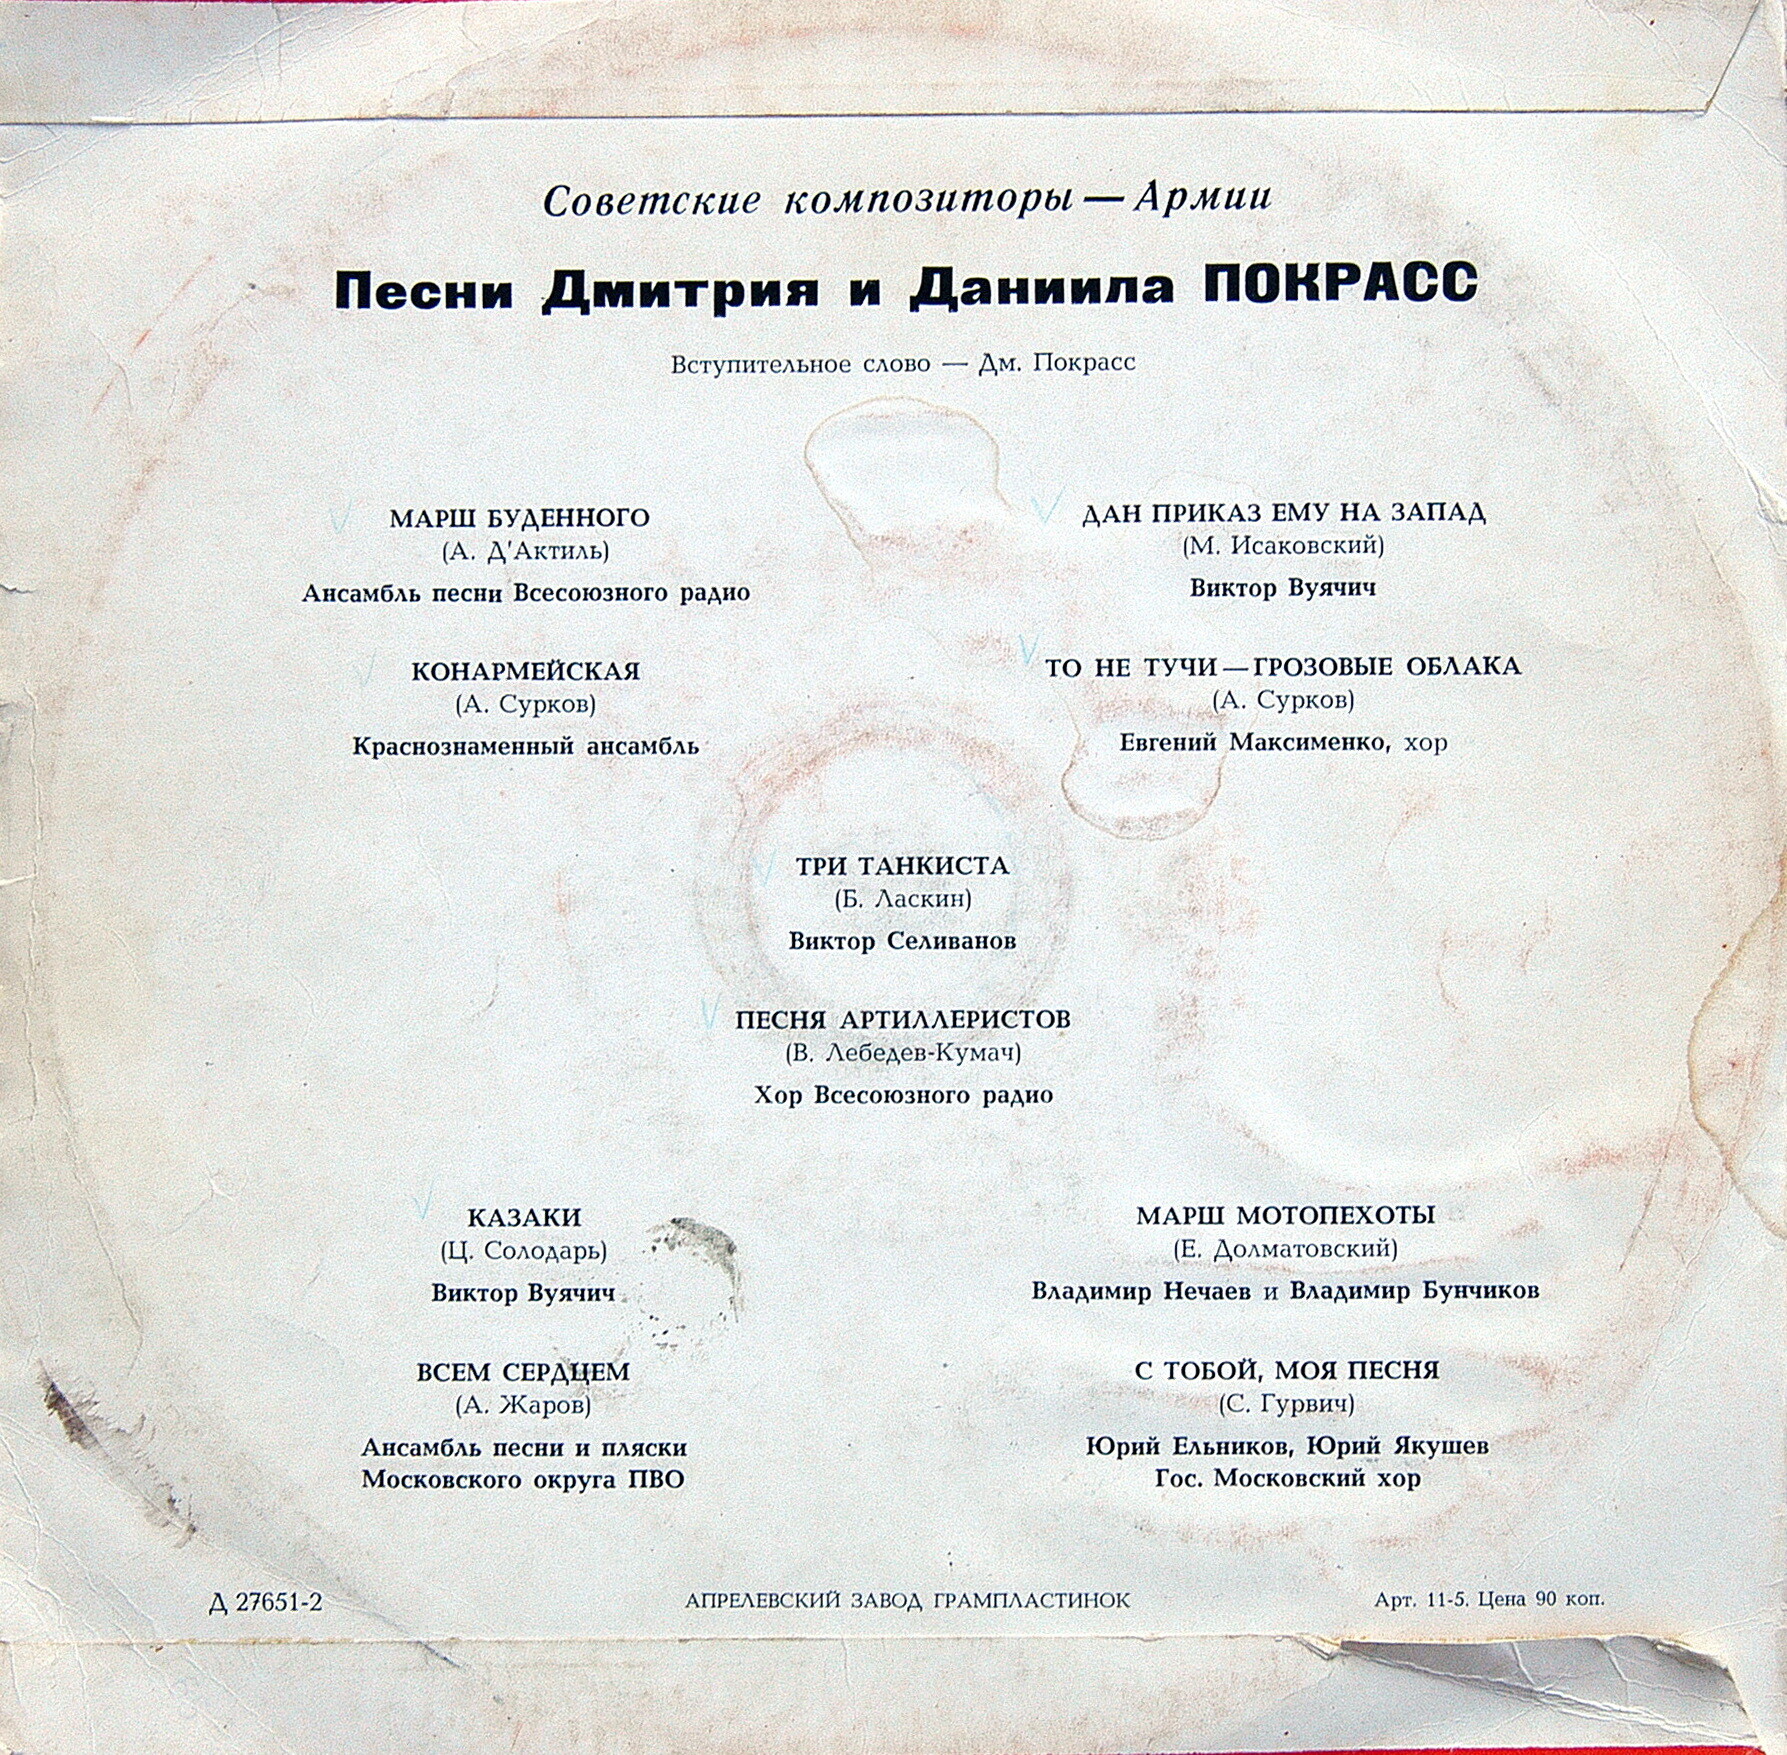 Дм. (1899) и Дан. (1905—1954) ПОКРАСС. Из цикла "Советские композиторы - Армии"